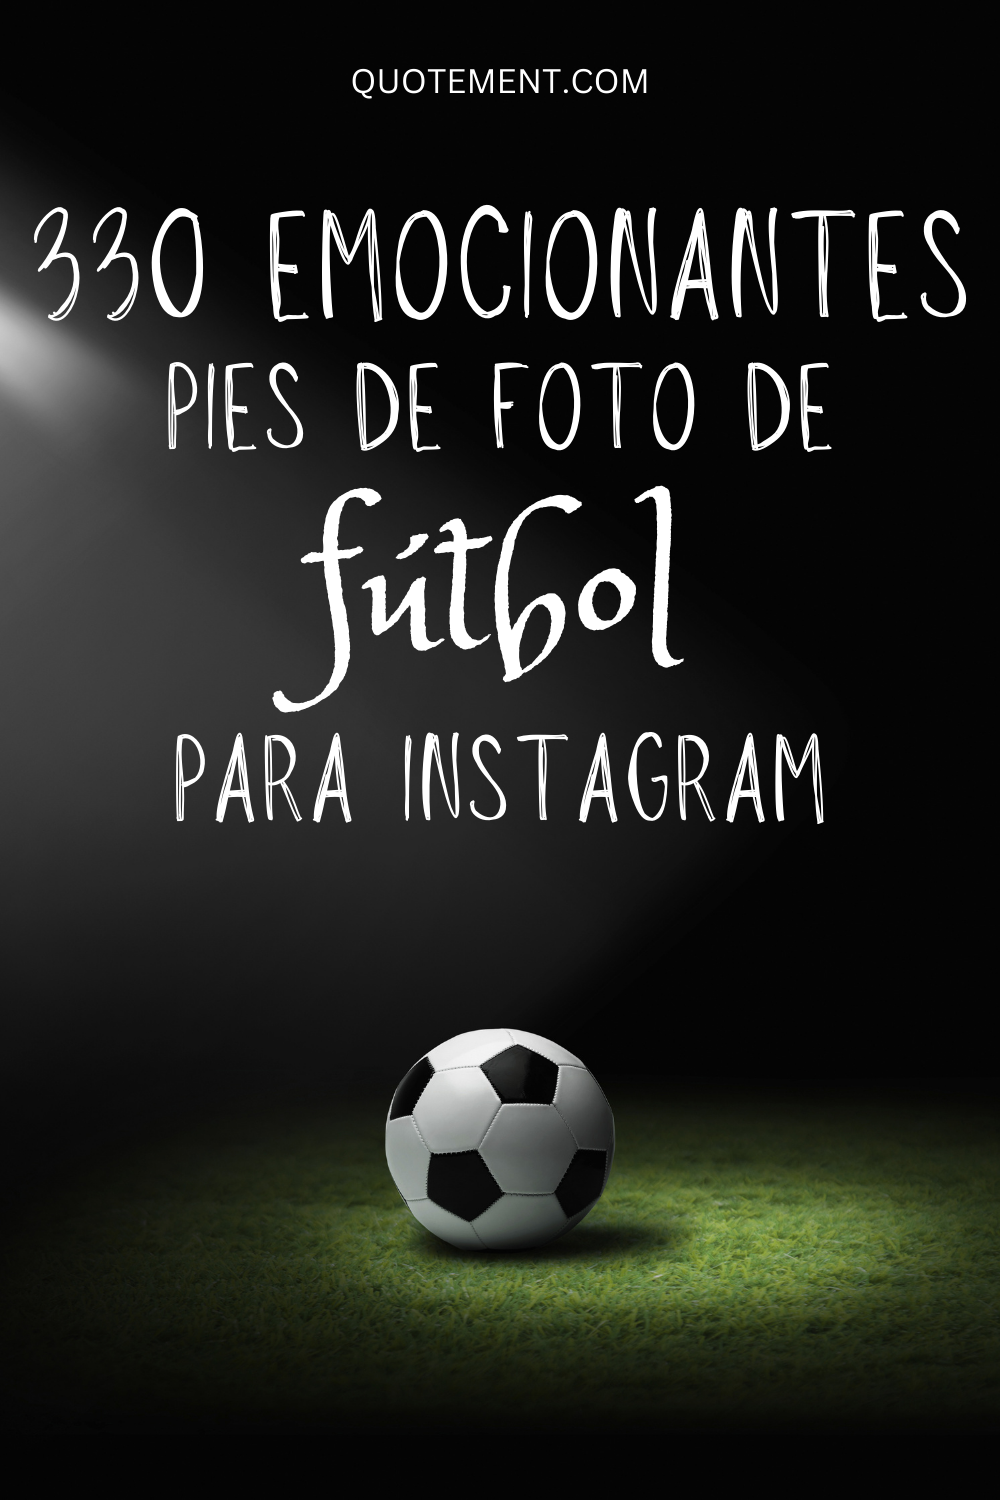 330 pies de foto de fútbol perfectos para Instagram que te inspirarán